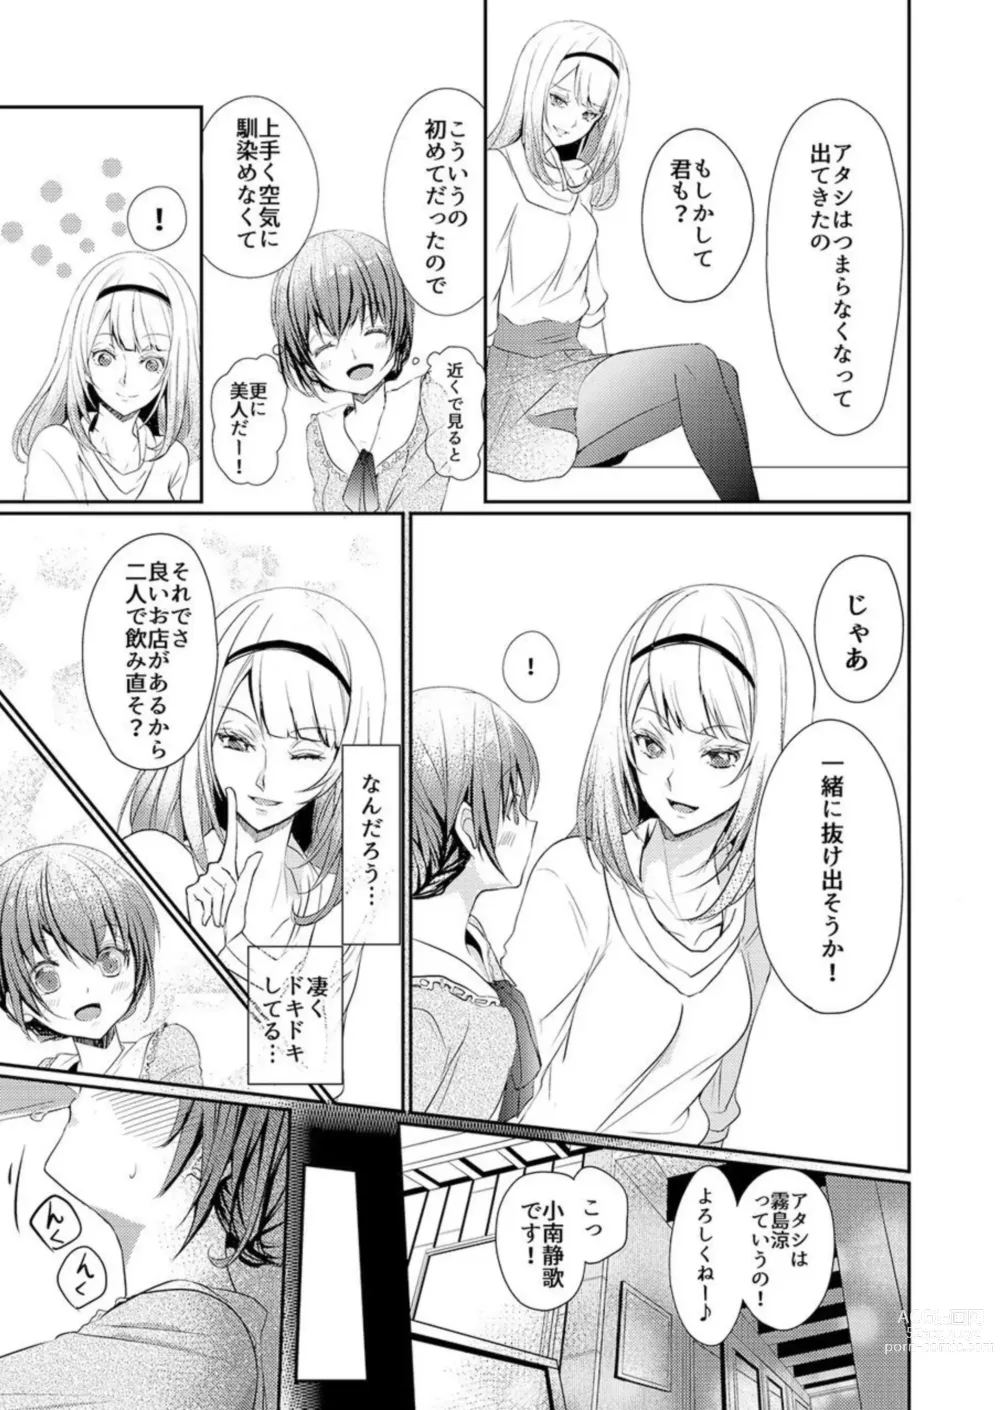 Page 5 of manga Skirt no Naka wa Kedamono Deshita 1